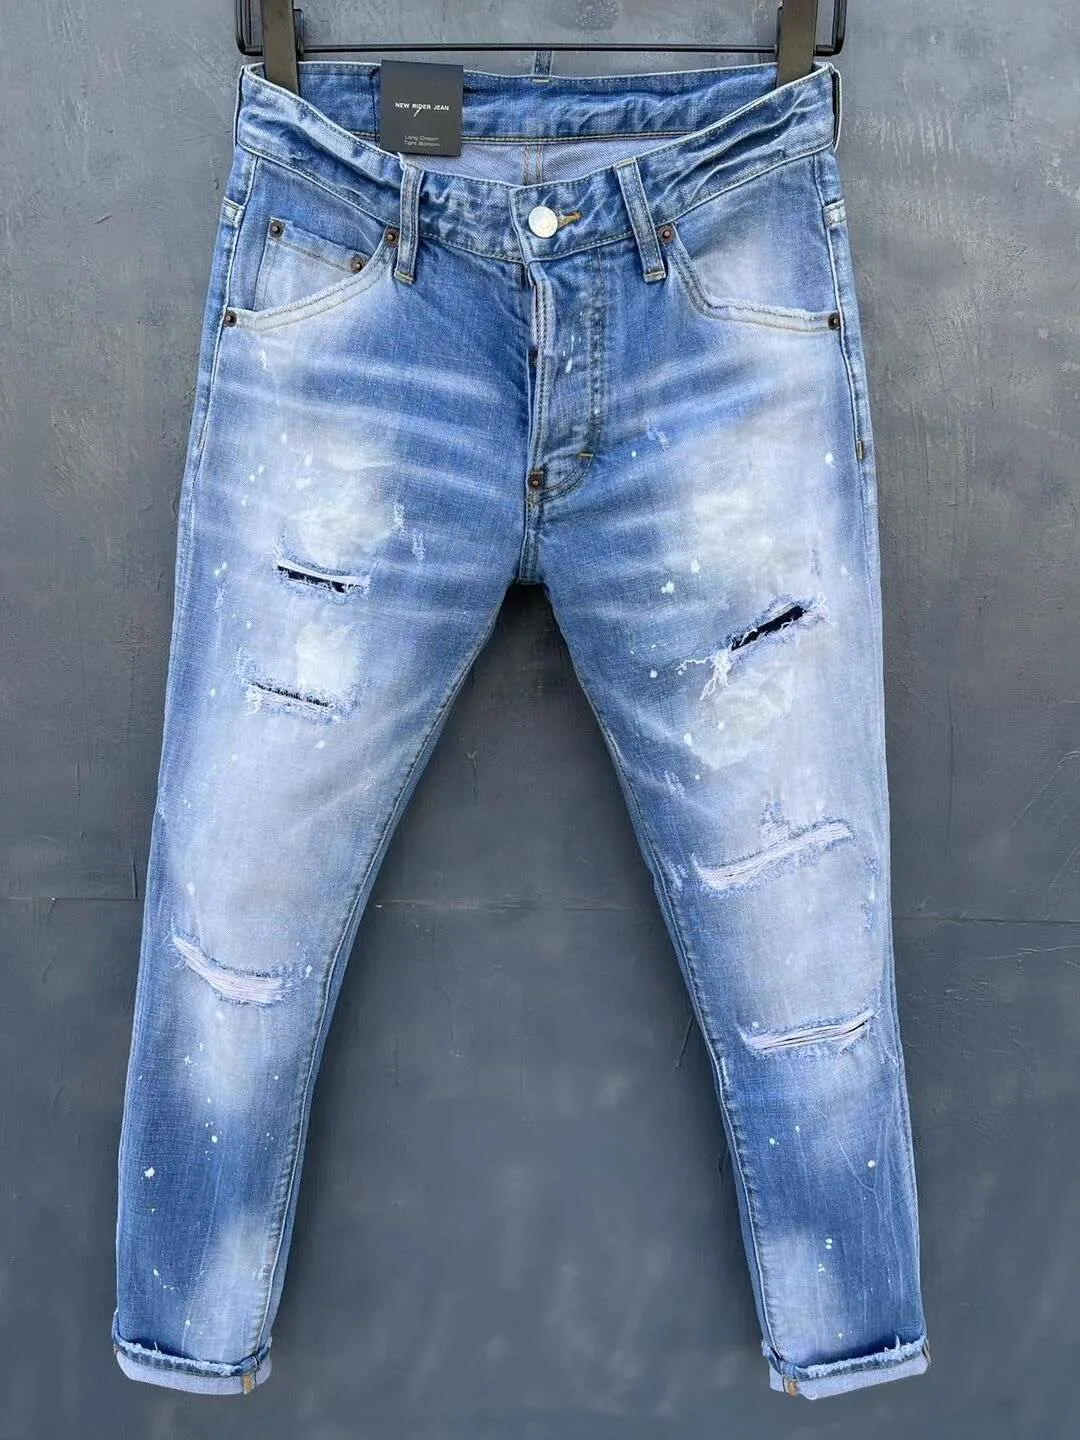 2021 новый бренд европейские и американские моды мужские повседневные джинсы, высококачественные стирки, чистое ручное измельчение, оптимизация качества LT032